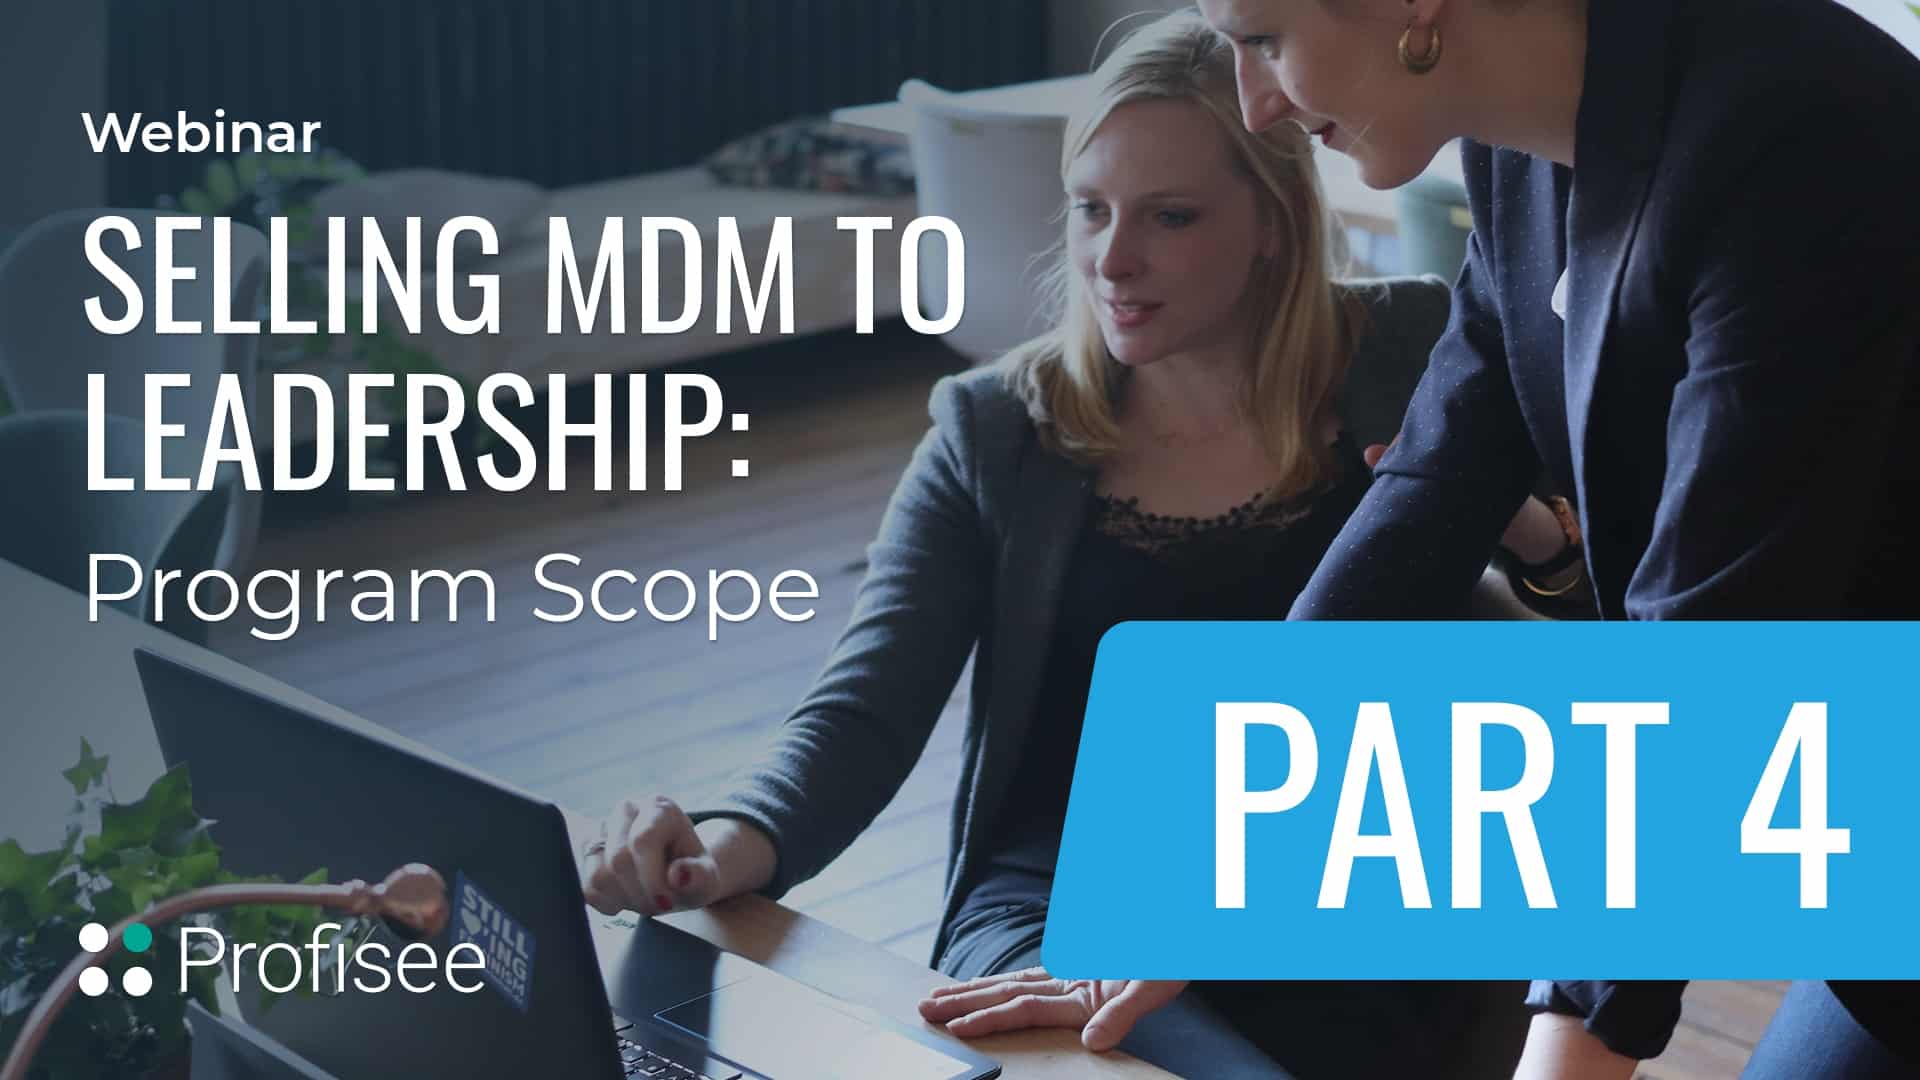 Profisee: Selling MDM to Leadership Pt. 4: Program Scope